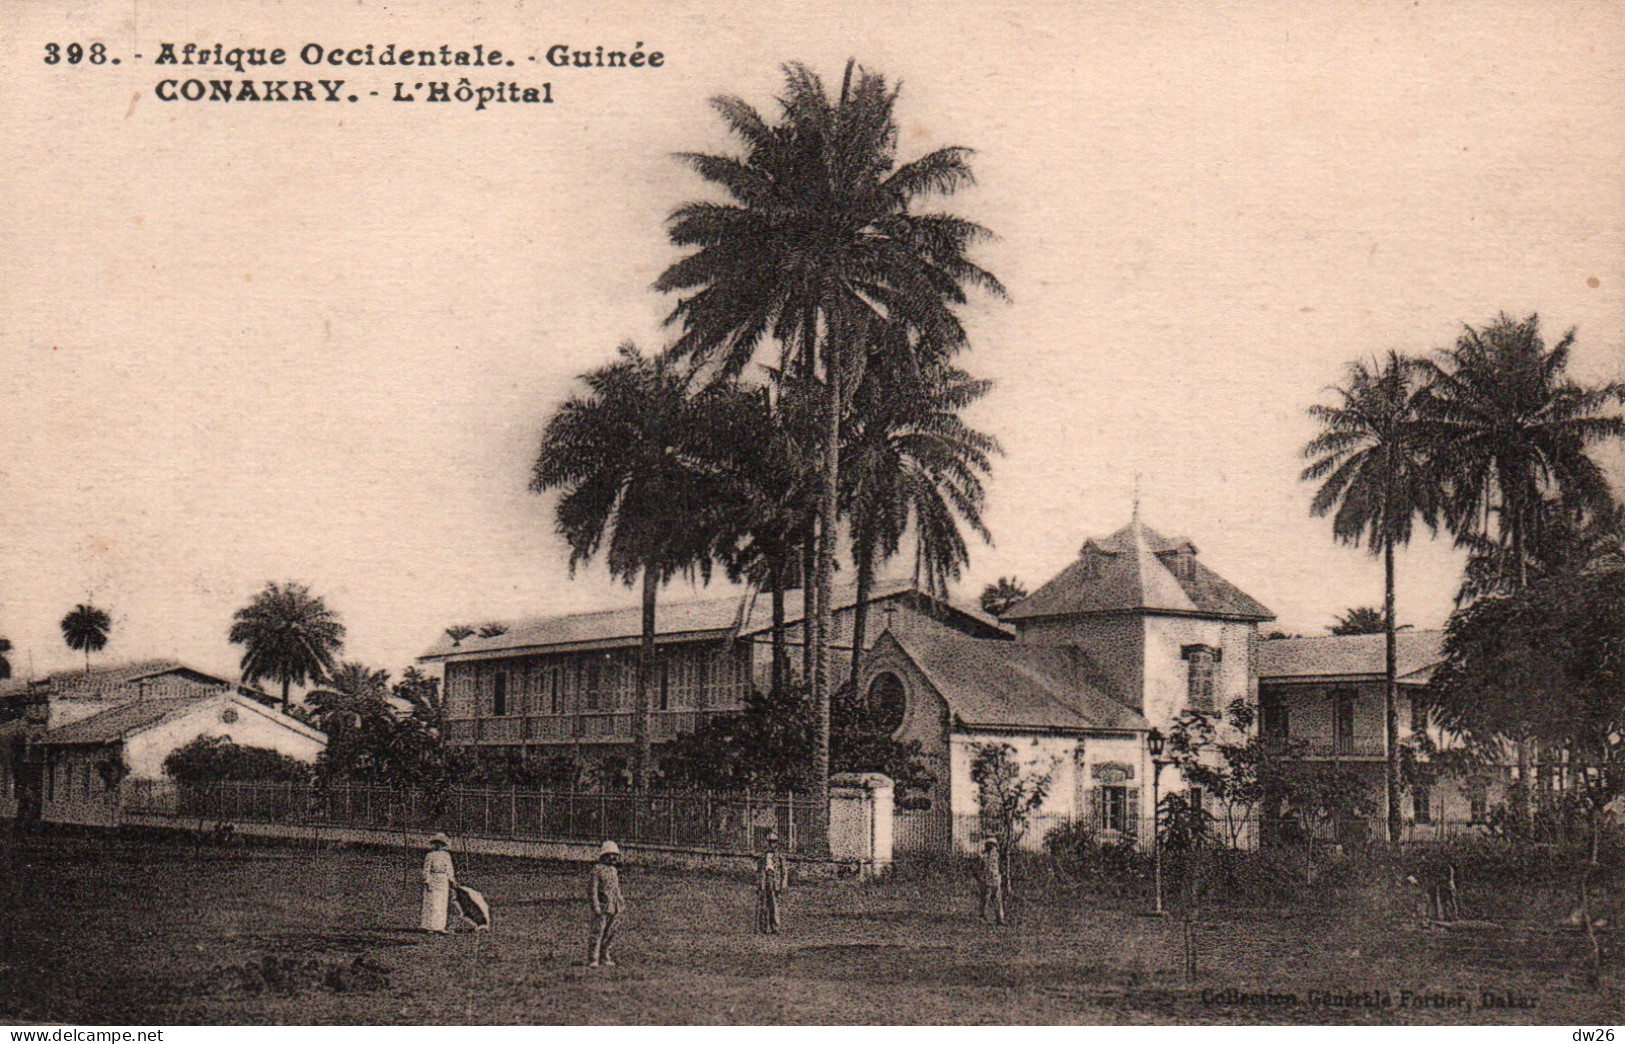 Afrique Occidentale - Guinée Française - Vue De L'Hôpital - Collection Fortier - Carte N° 398 - French Guinea